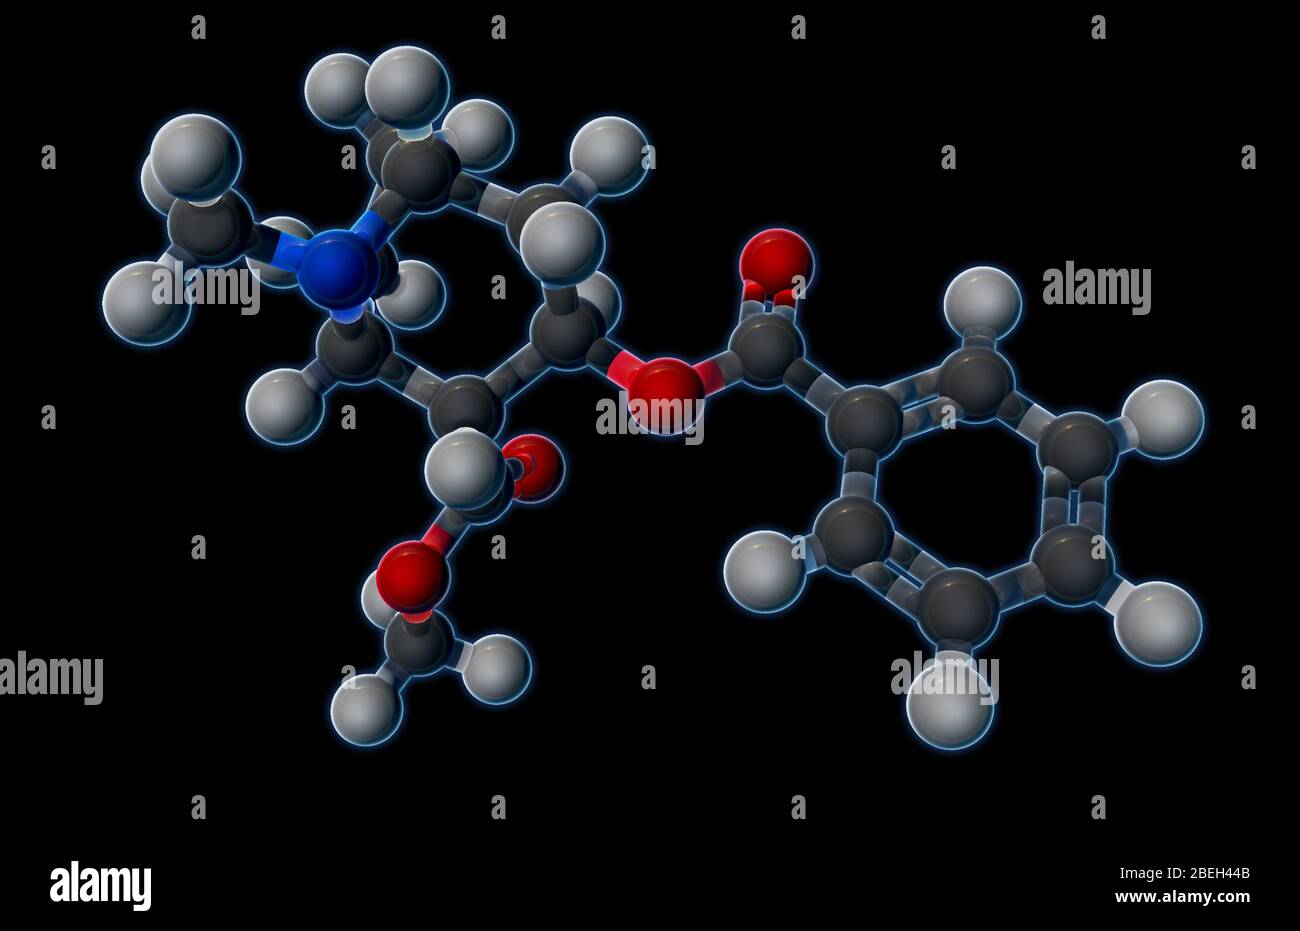 Un modèle moléculaire de cocaïne (C17H21NO4), un stimulant et un médicament antiappétit, obtenu à partir de feuilles de plantes de coca, qui produit de faibles doses de propriétés de cocaïne d'anesthésie lui permettent de passer plus facilement par la barrière sang-cerveau que d'autres produits chimiques psychoactifs. La nature addictive du médicament rend plus dangereux que les autres stimulants, car des doses plus élevées peuvent conduire à la mort cardiaque soudaine. Les atomes sont de couleur gris foncé (carbone), gris clair (hydrogène), rouge (oxygène) et bleu (azote). Banque D'Images